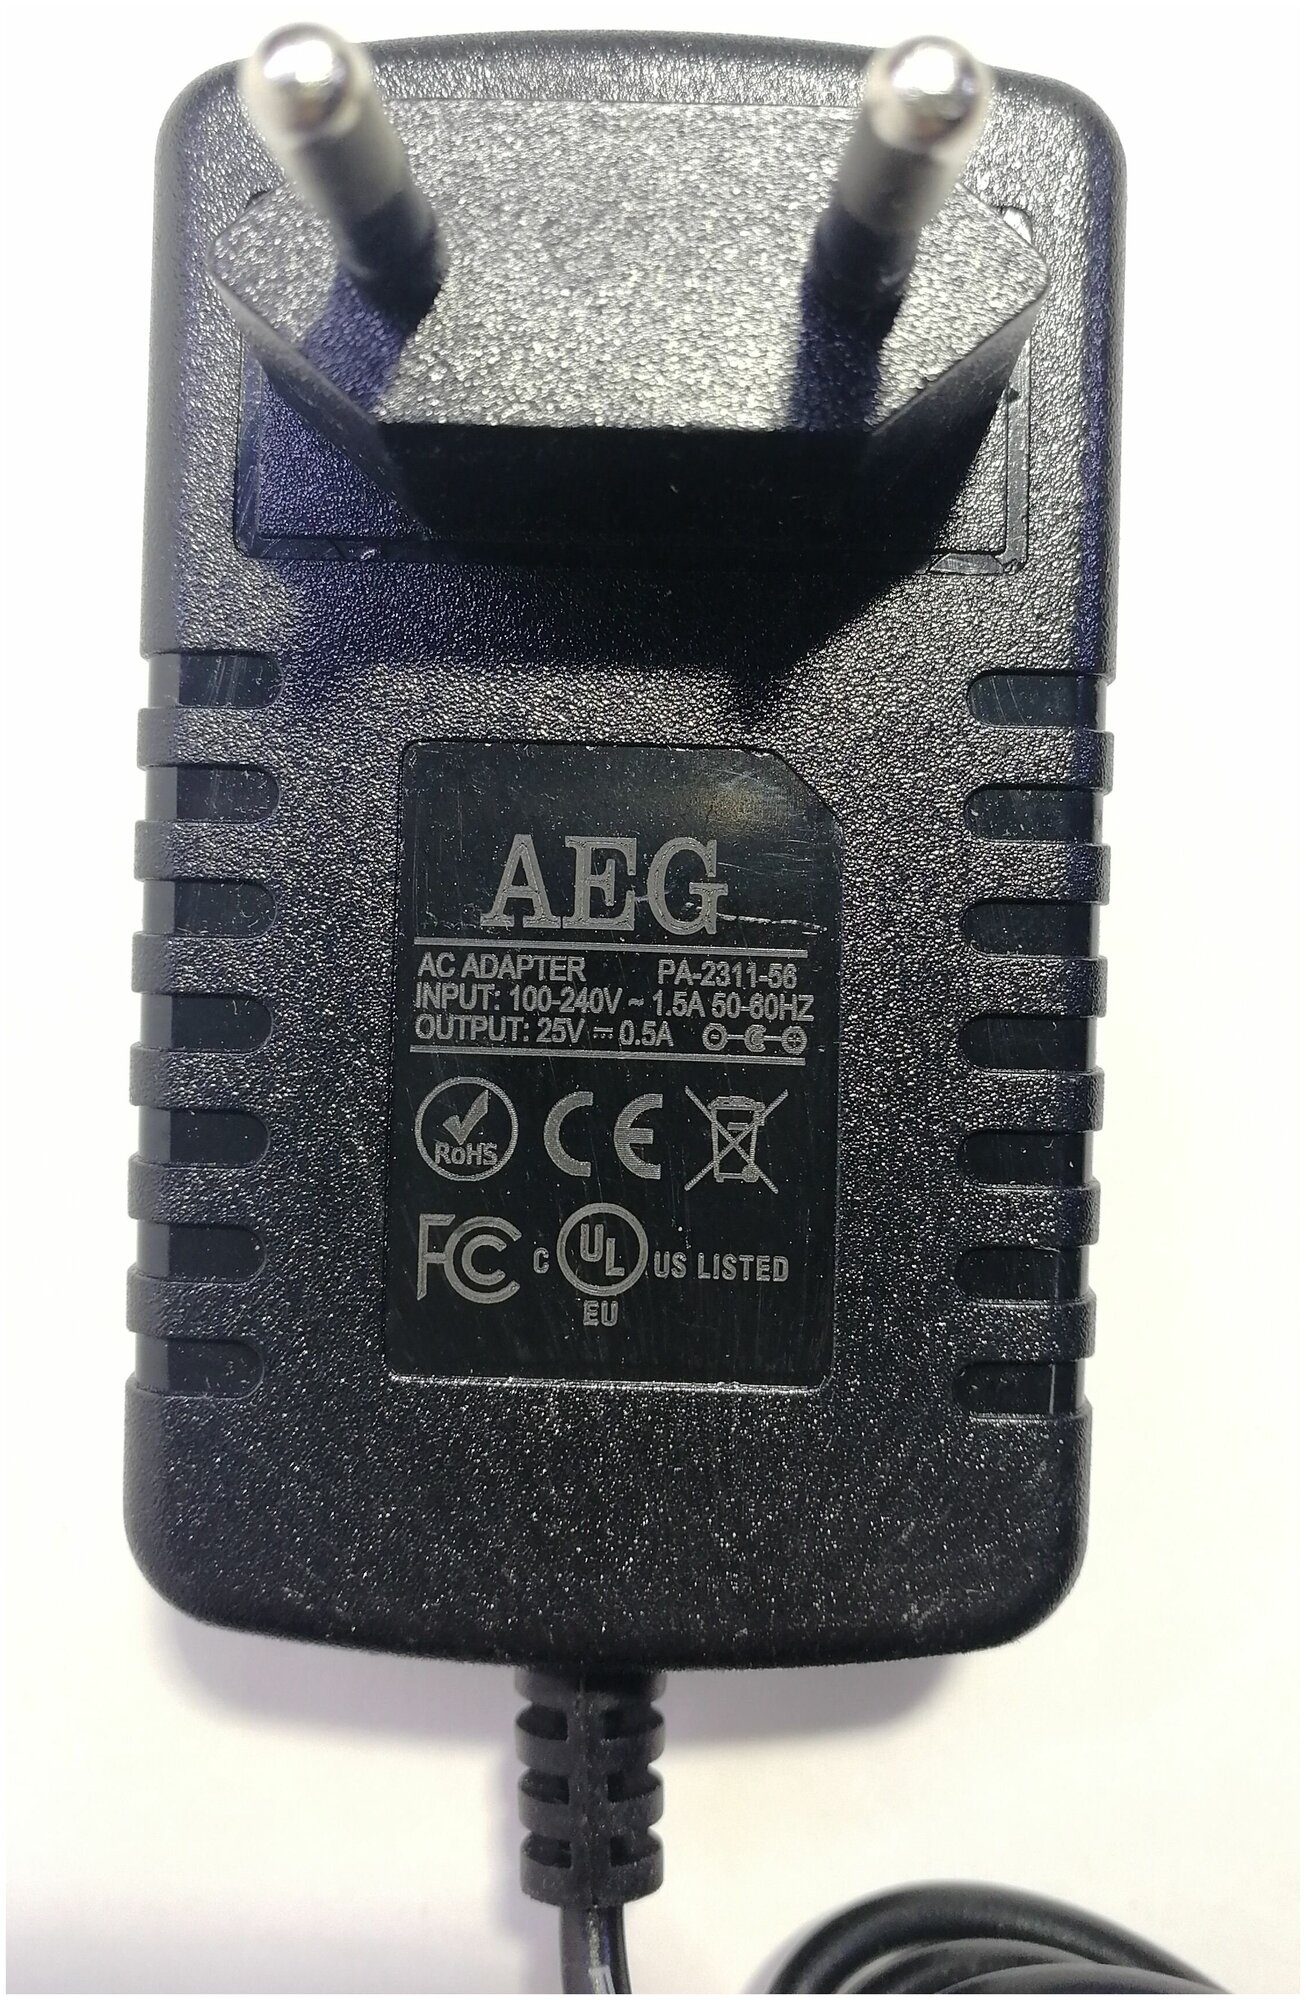 Сетевое зарядное устройство блок питания для аккумуляторных пылесосов Electrolux ergorapido, AEG DC 25v 0.5a - фотография № 2